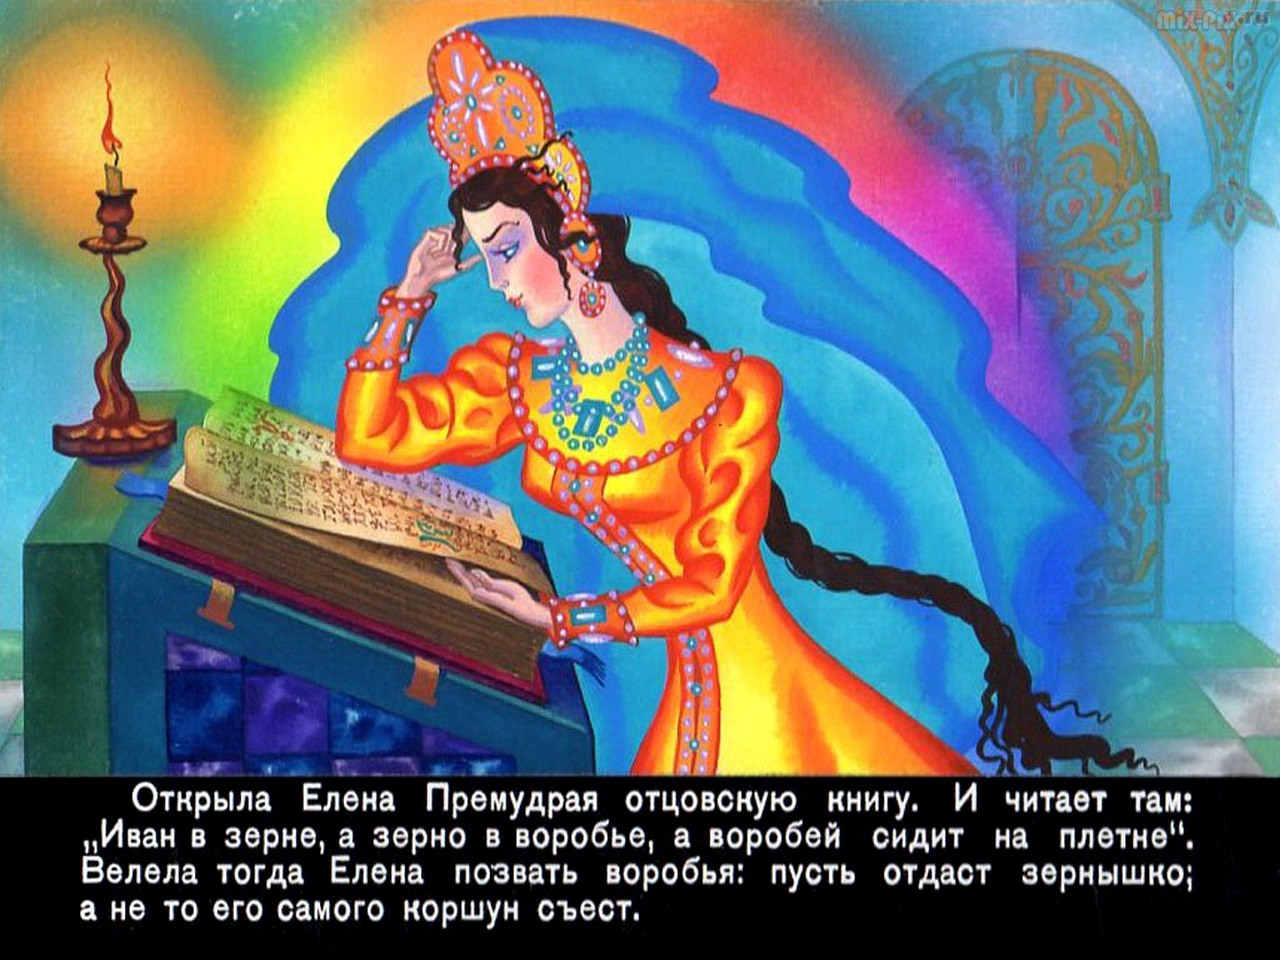 Елена премудрая - русская народная сказка. читать онлайн.